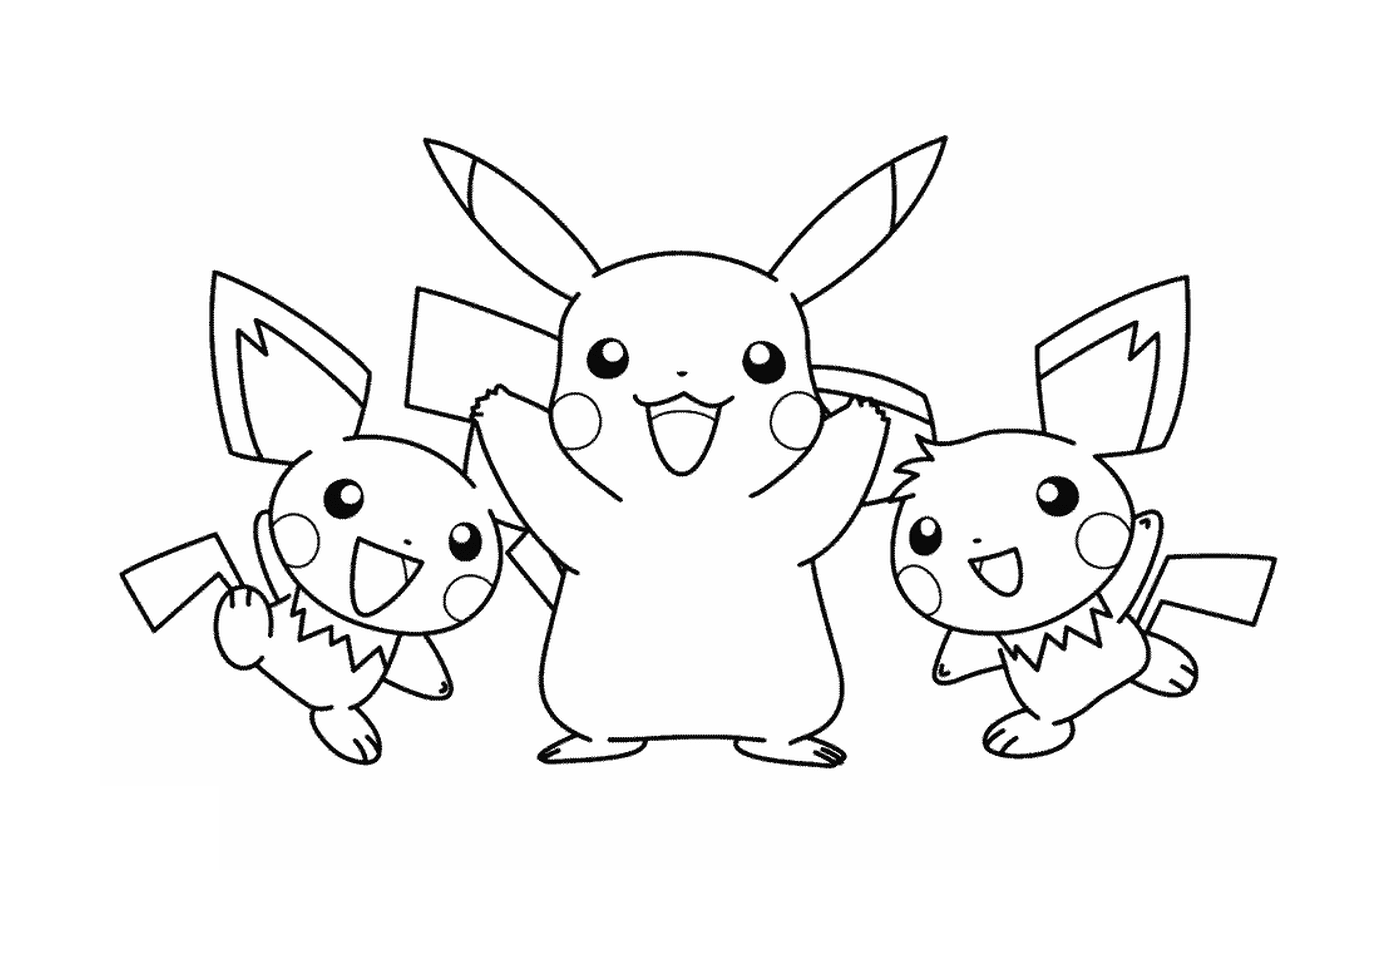   Trois personnages Pikachu réunis 